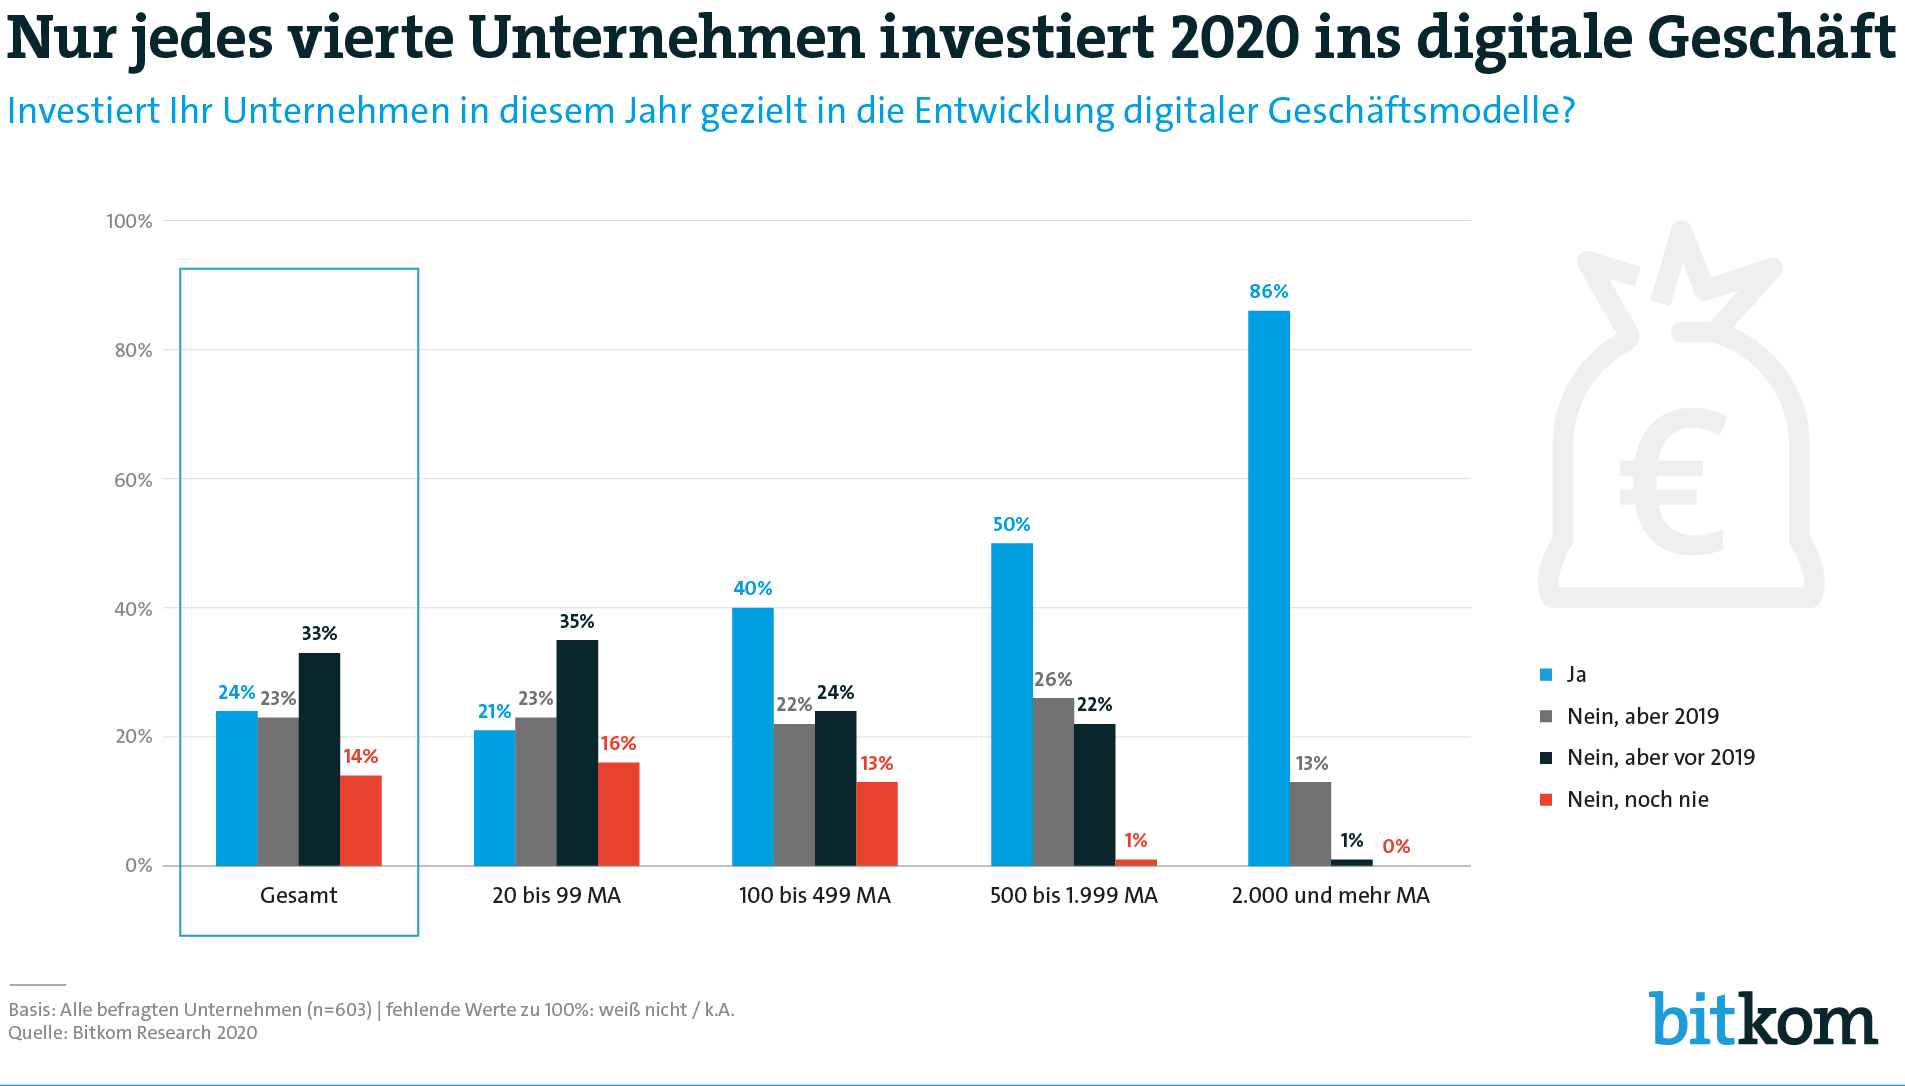 Nur jedes vierte Unternehmen investiert 2020 gezielt in digitale Geschäftsmodelle